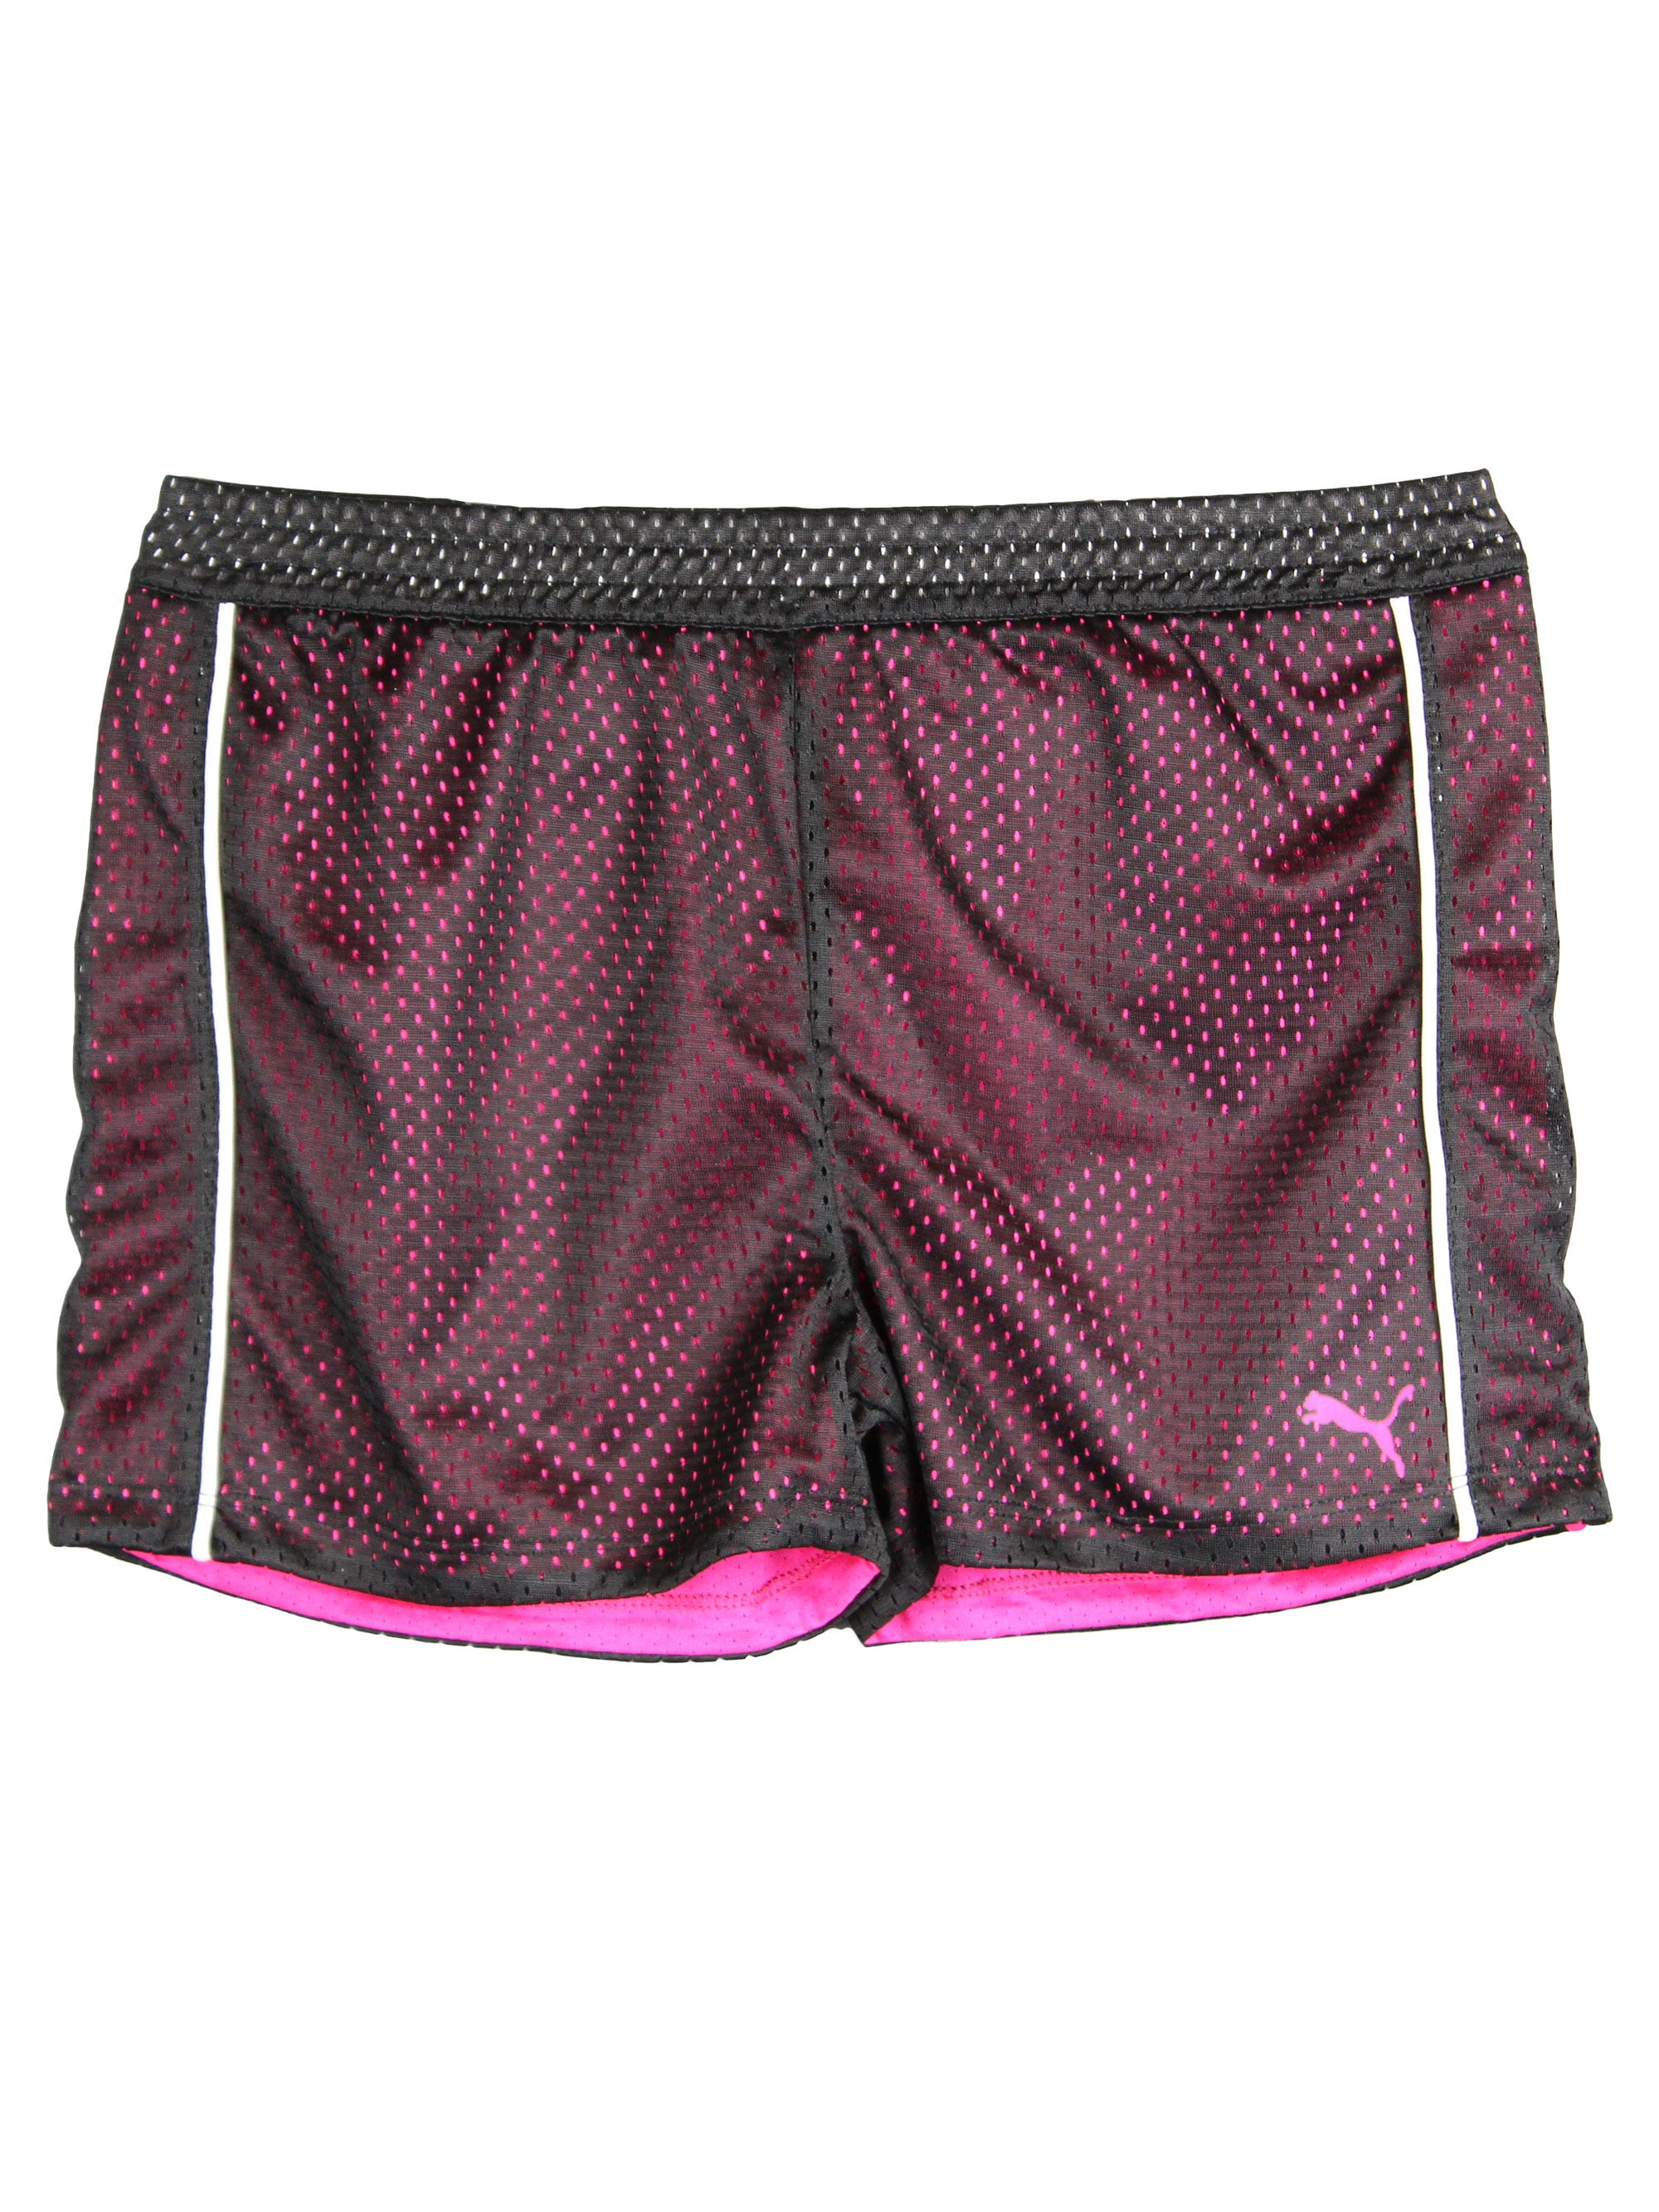 puma soccer shorts